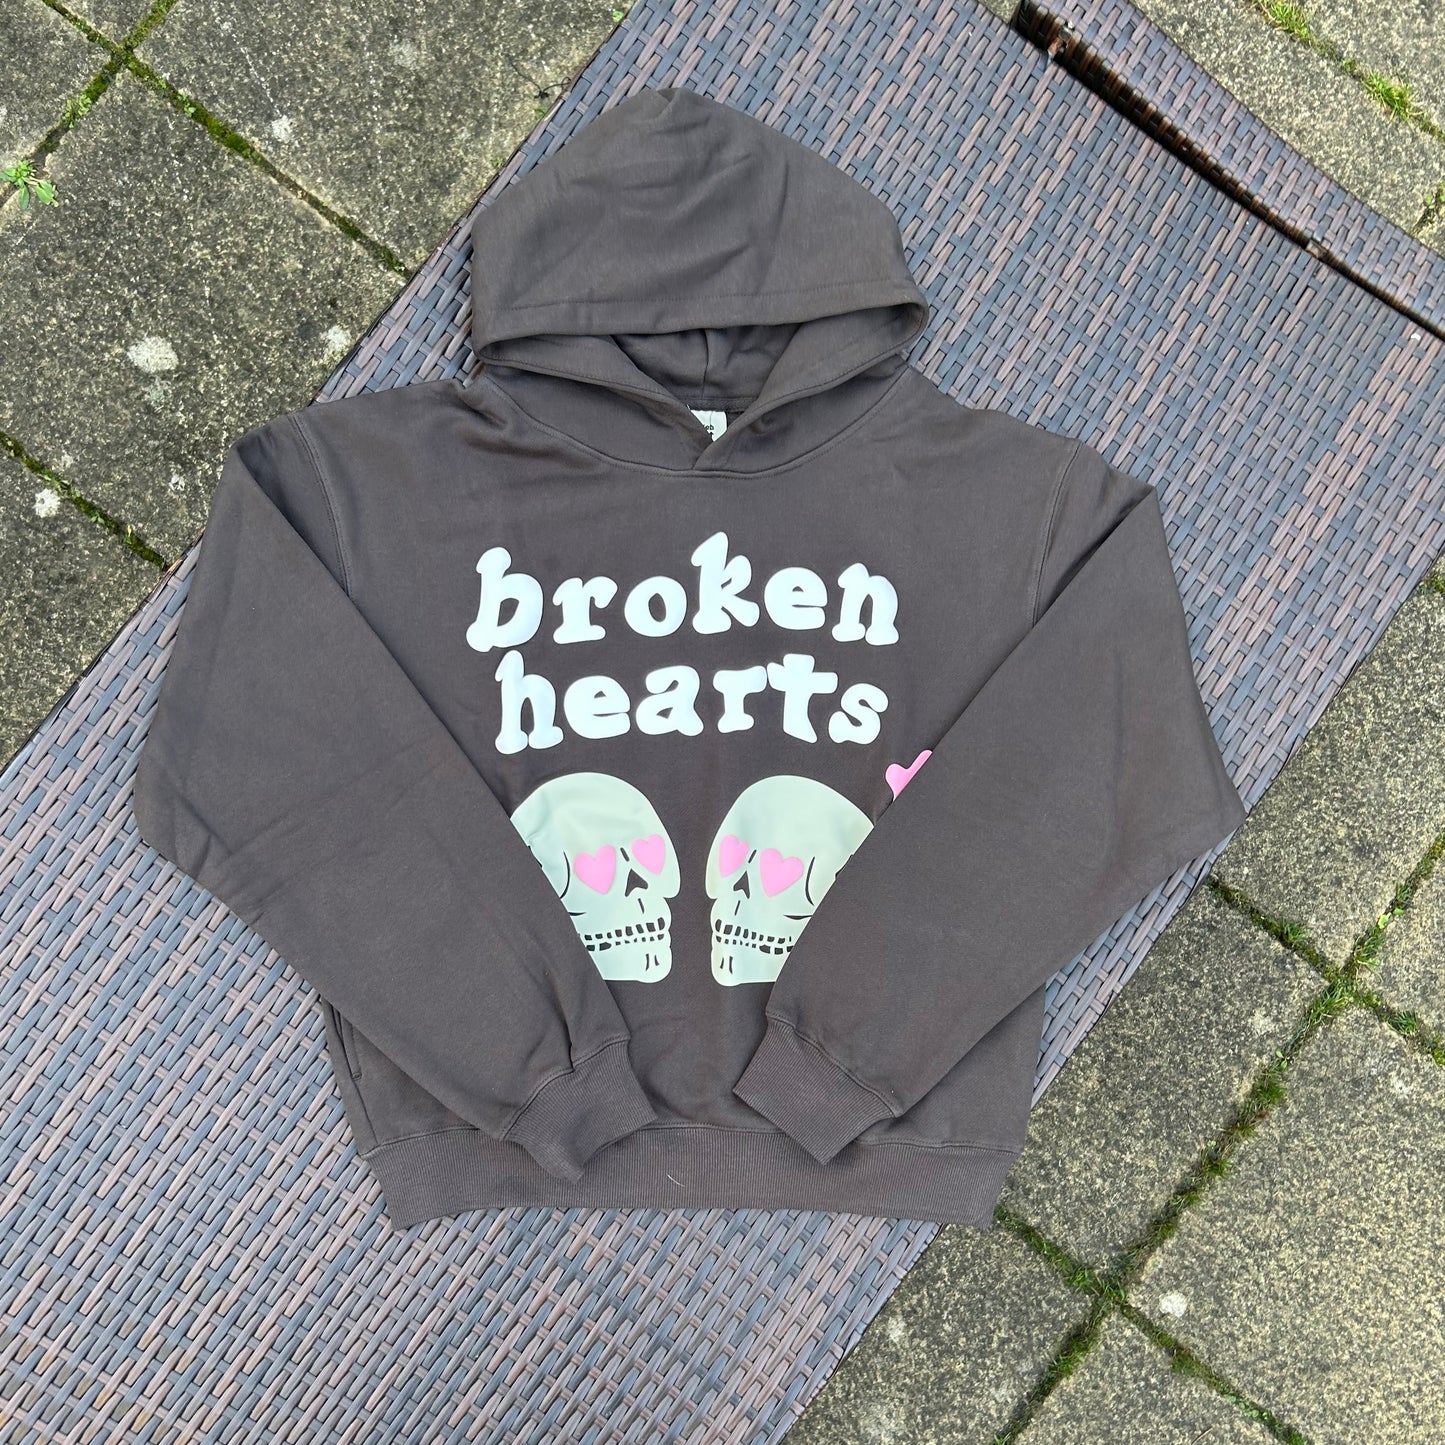 Broken Planet "Broken Hearts" hoodie